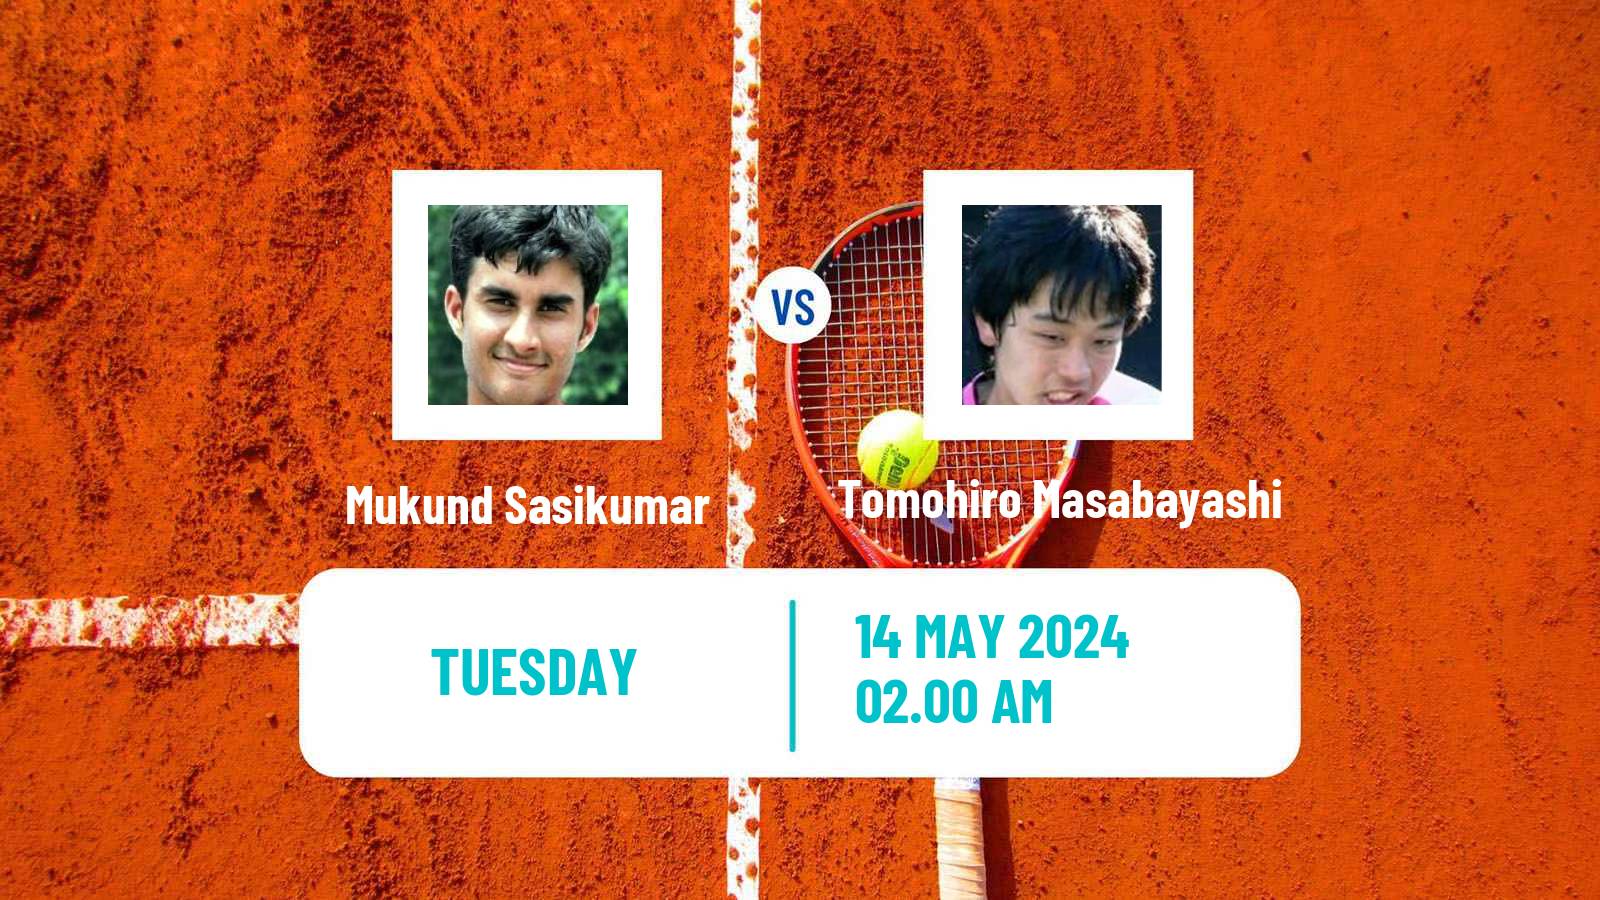 Tennis Taipei Challenger Men Mukund Sasikumar - Tomohiro Masabayashi